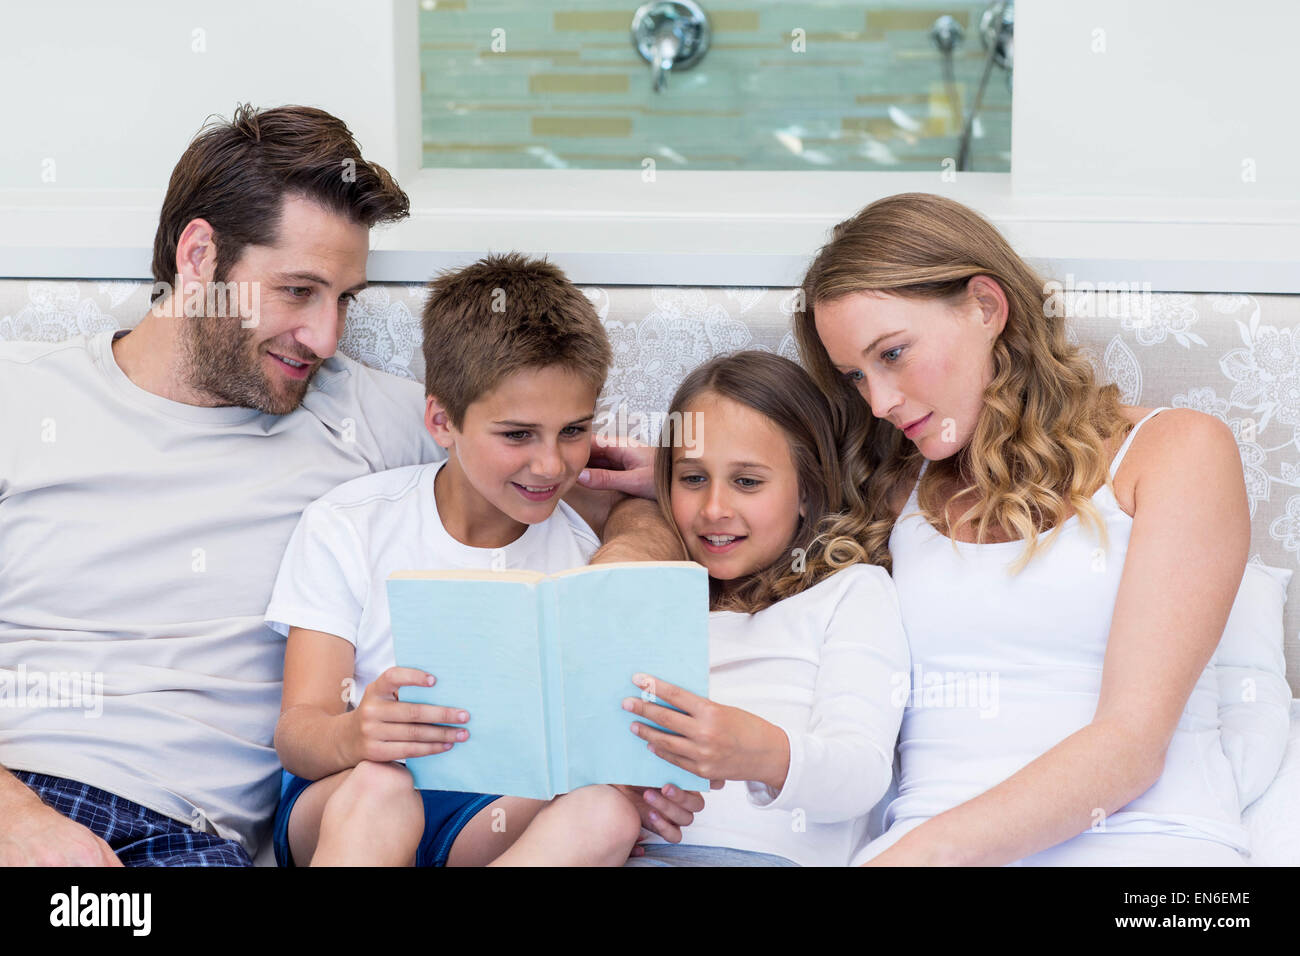 Famille heureuse sur le bed reading book Banque D'Images